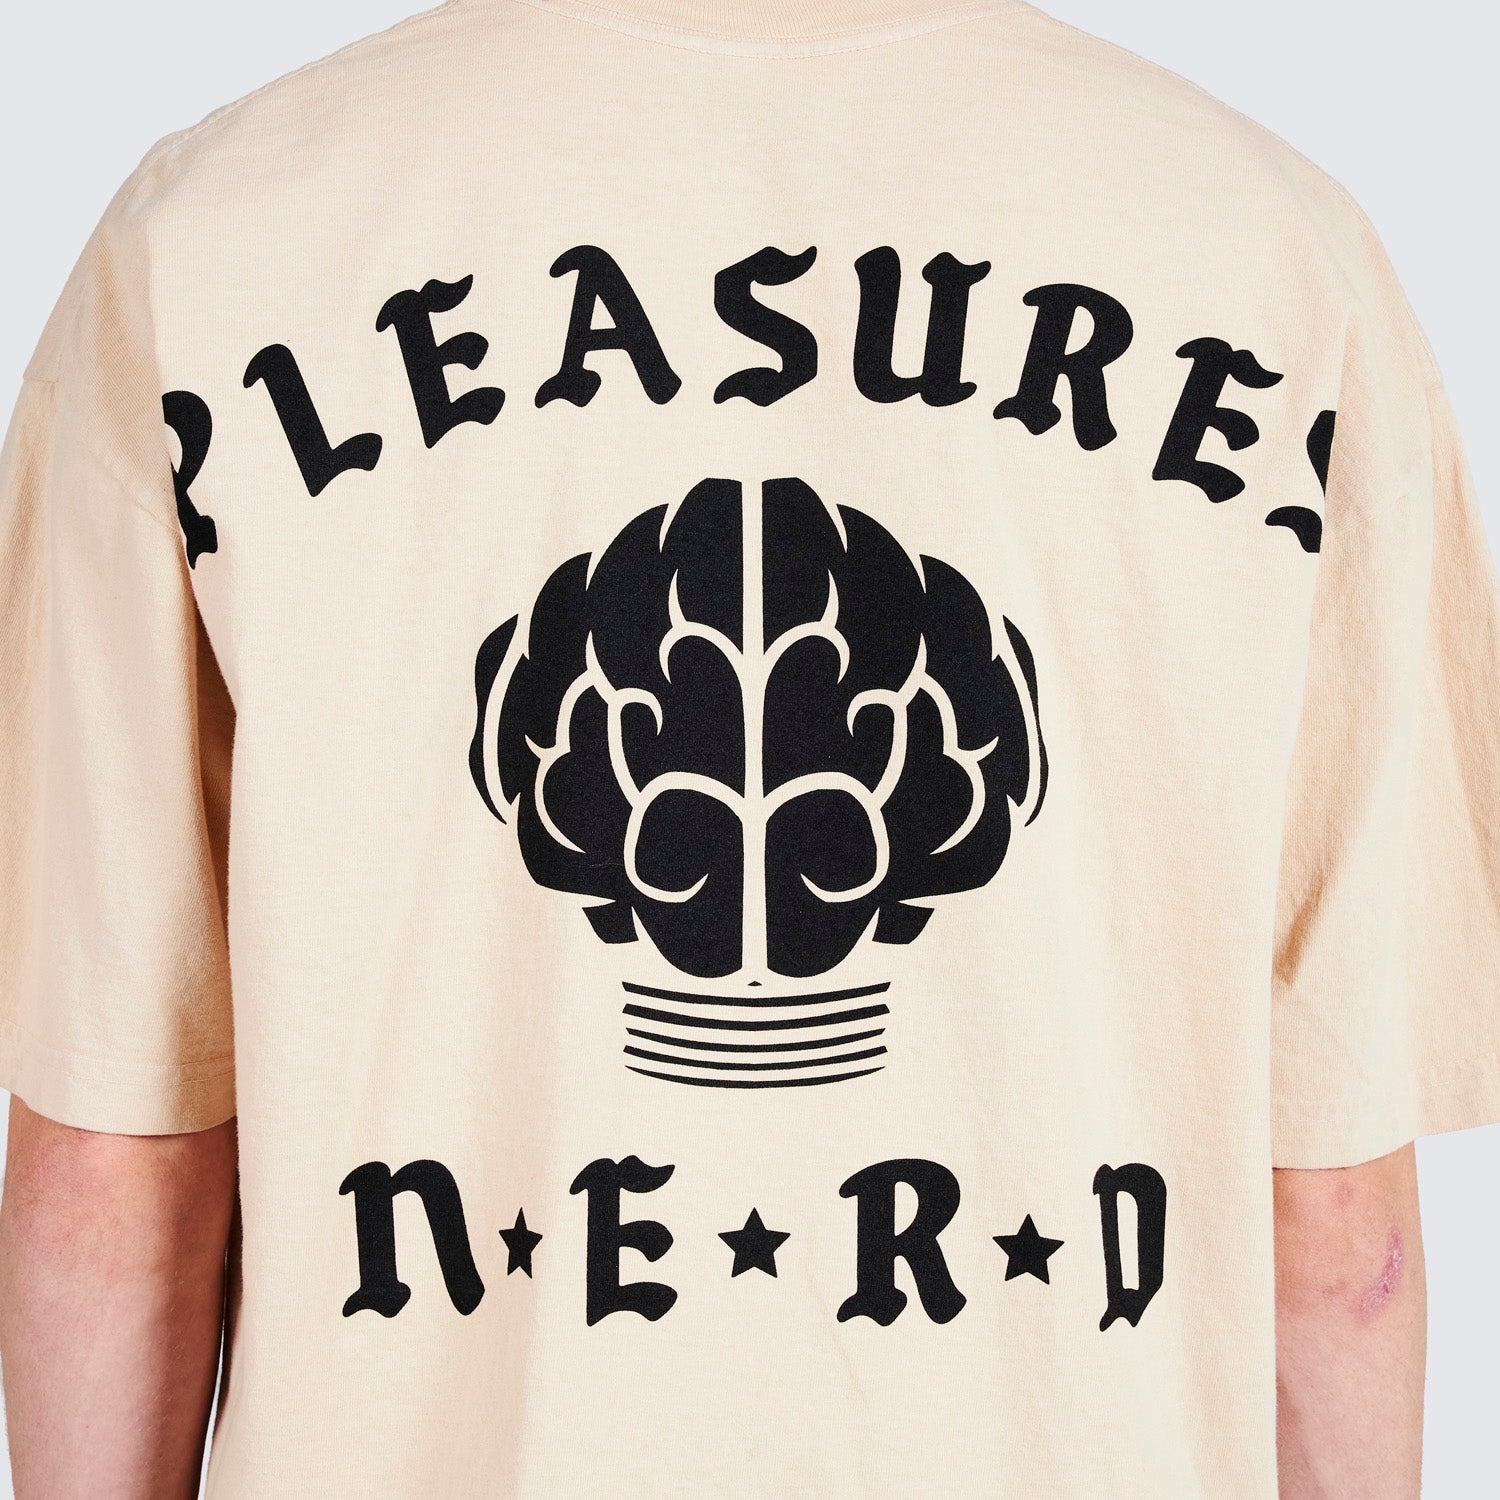 Pleasures Men Rockstar T-Shirt Tan - T-SHIRTS - Canada